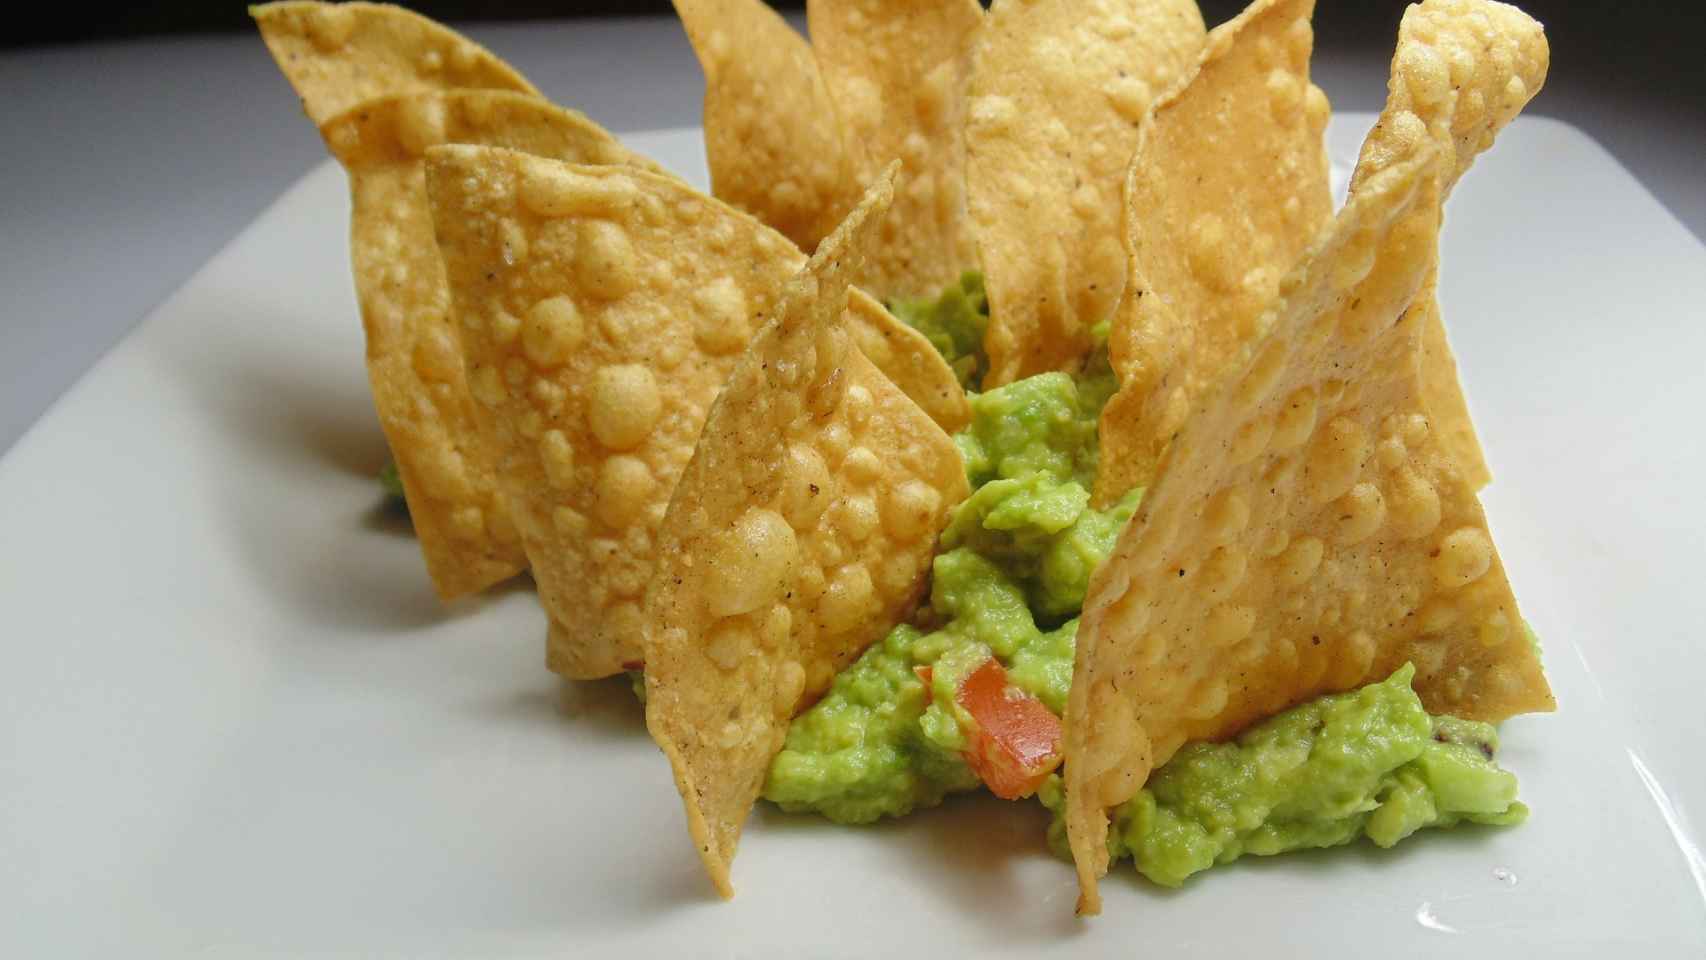 Uno nachos triangulares sobre un poco de guacamole.